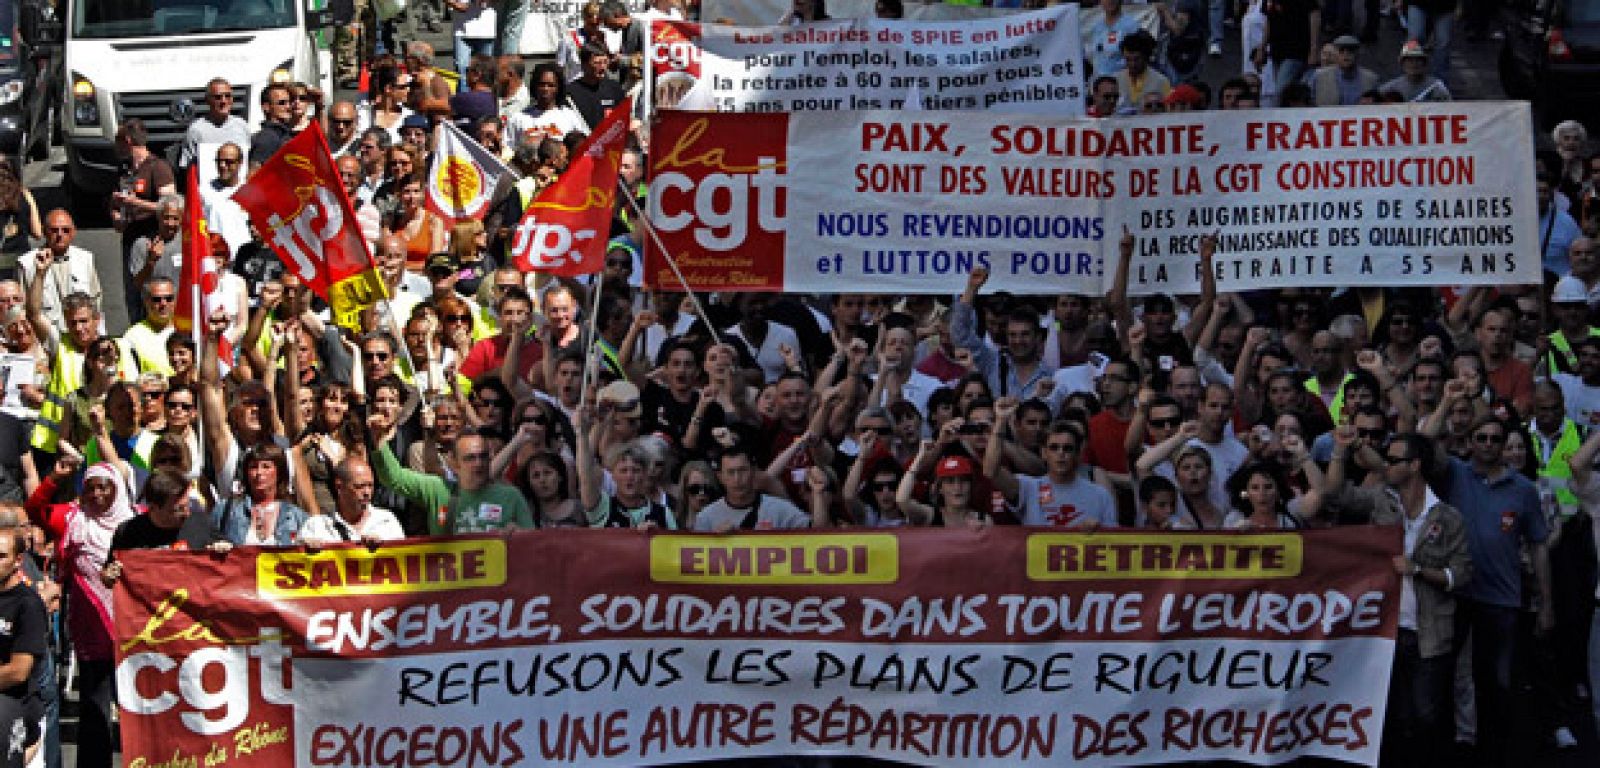 Más de 800.000 personas han participado en la manifestación organizada en París, según los sindicatos convocantes.